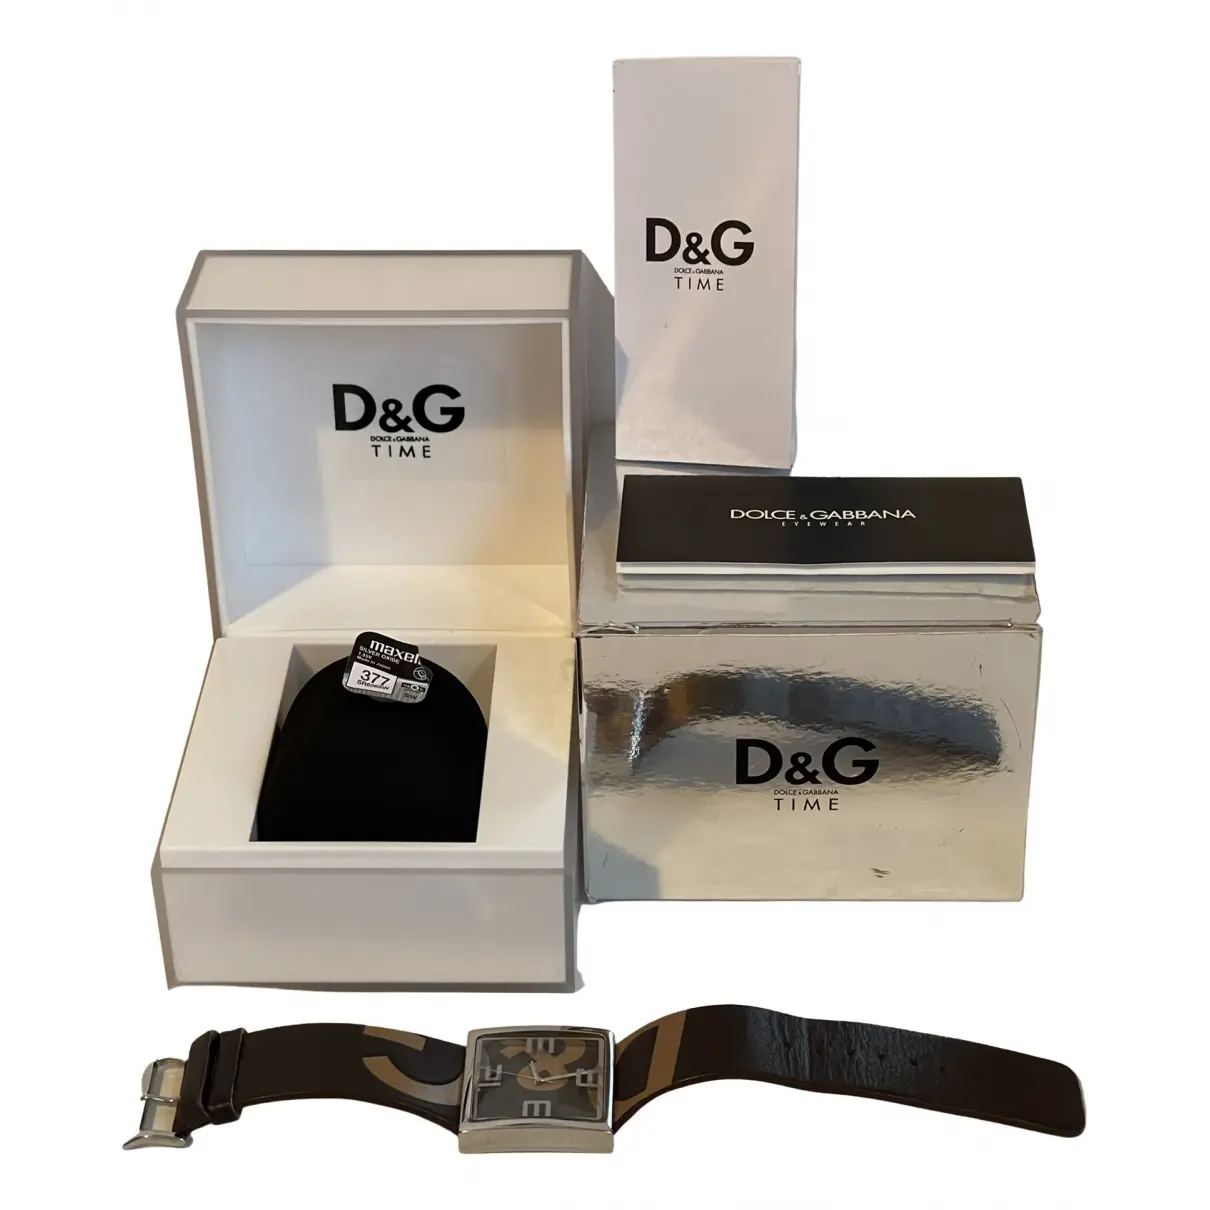 Buy D&G Watch online